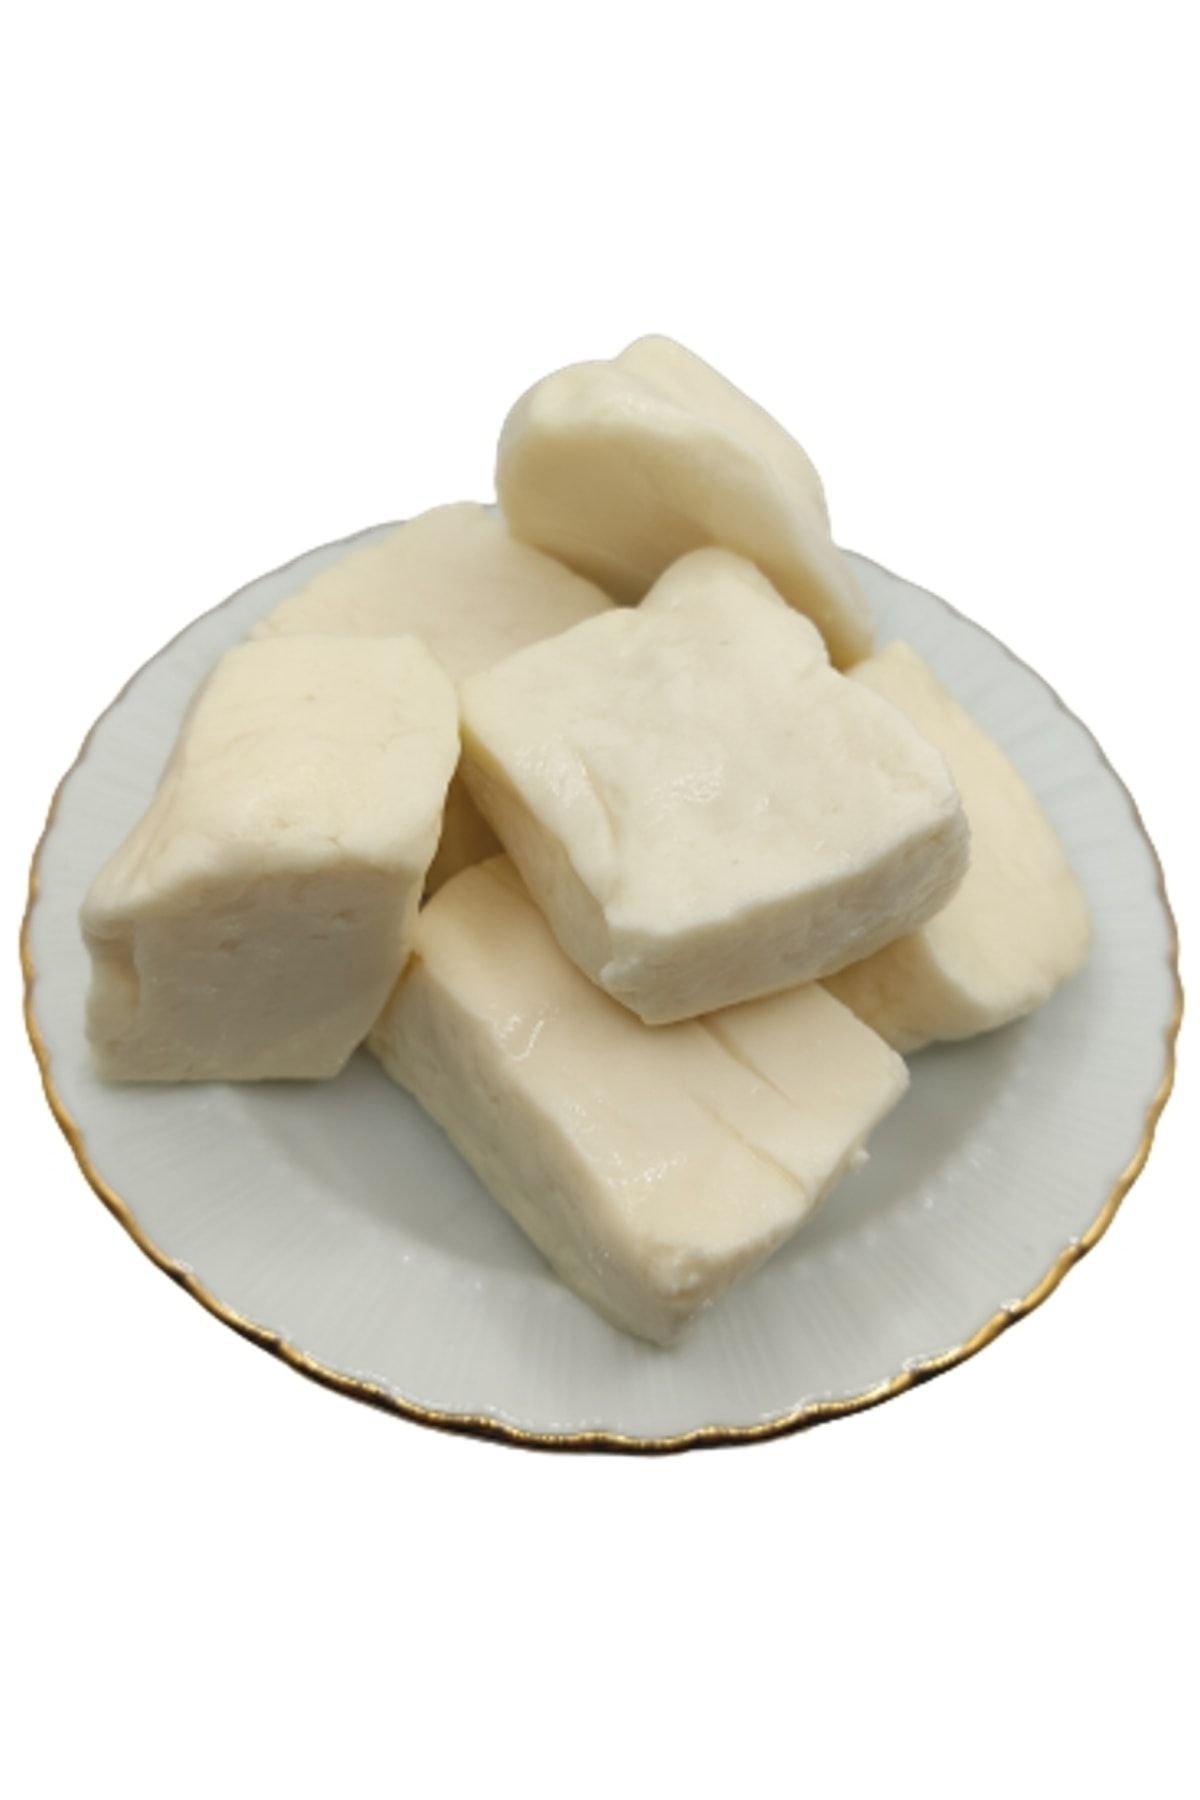 bakkal hasan Tam Yağlı Antep Peyniri (KEÇİ PEYNİRİ) 3 Kg -